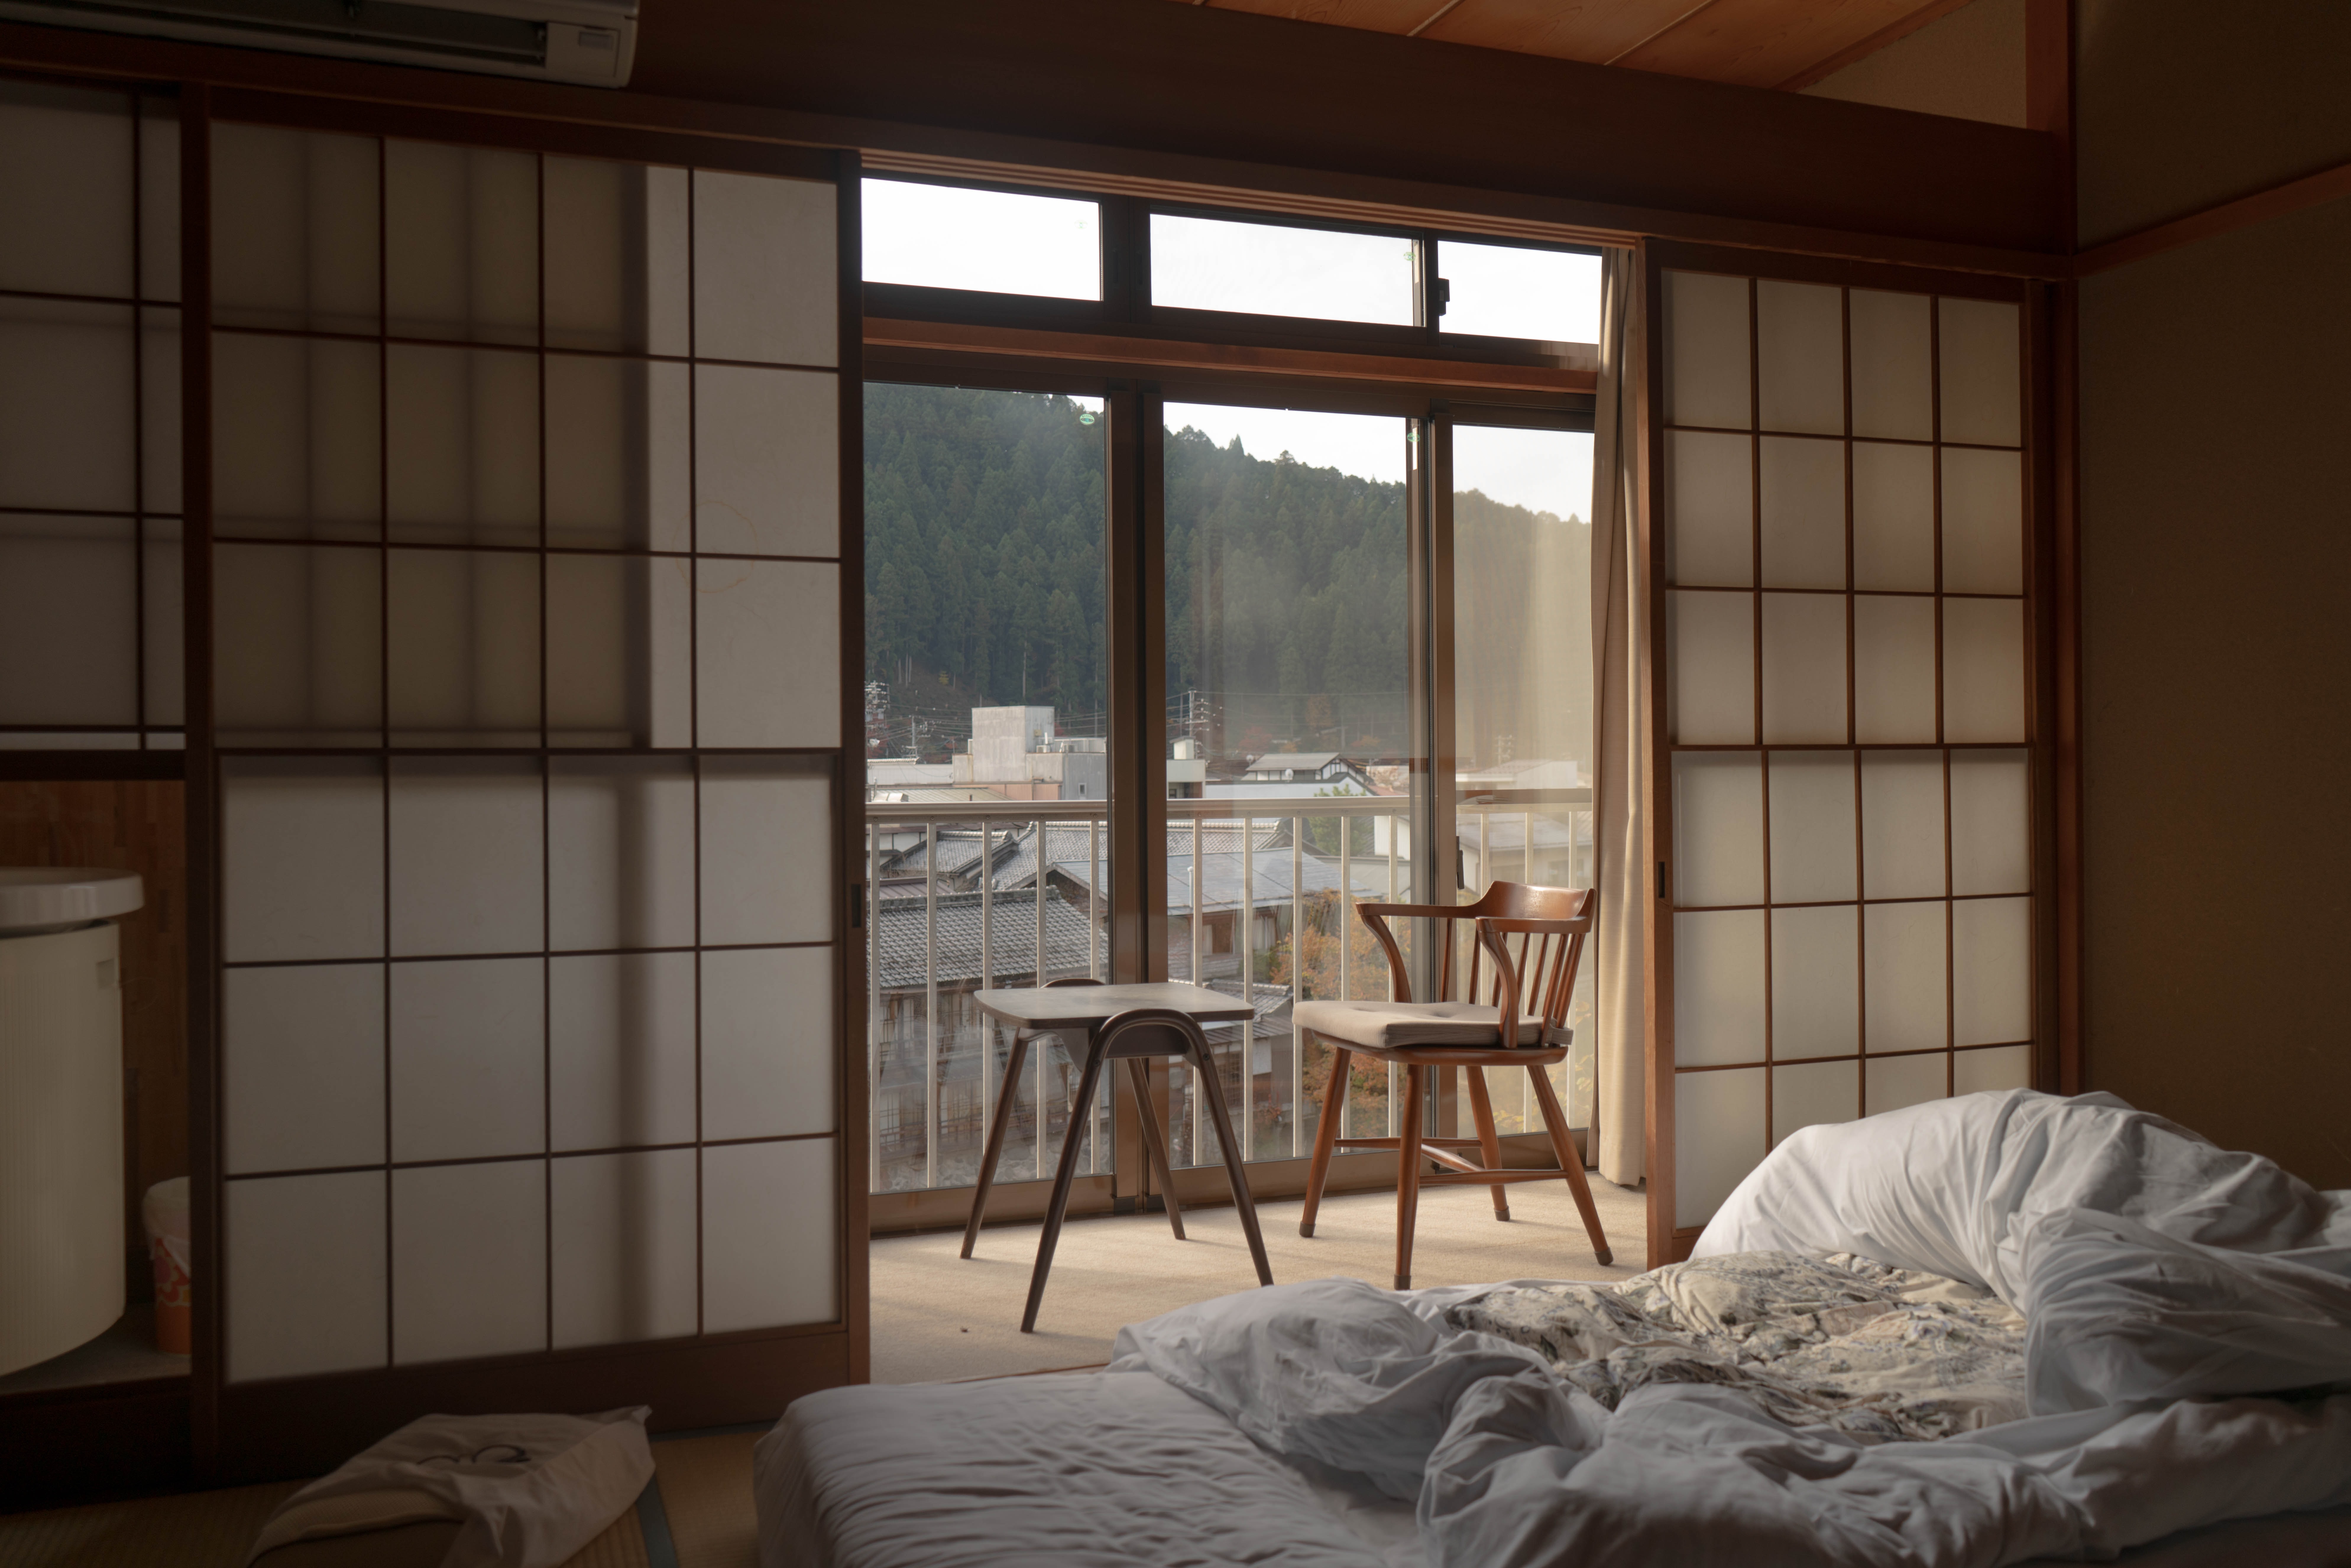 Ilustrasi kamar di Jepang. (Lucas Calloch dari Unsplash)